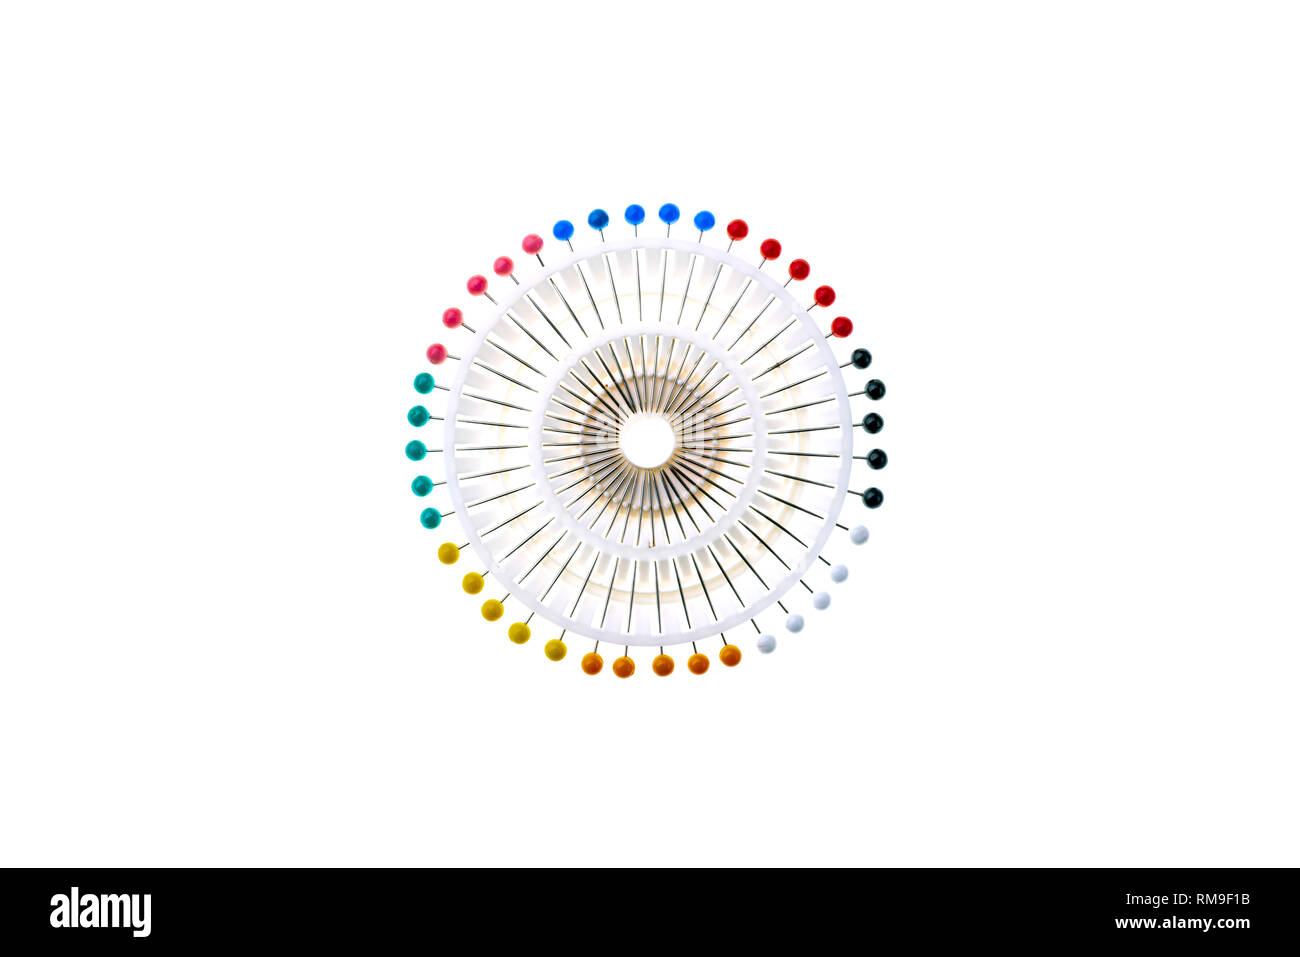 Conjunto de cabeza redonda colorido o pasadores de Berry, en un soporte de plástico blanco formando una imagen abstracta. Foto de stock